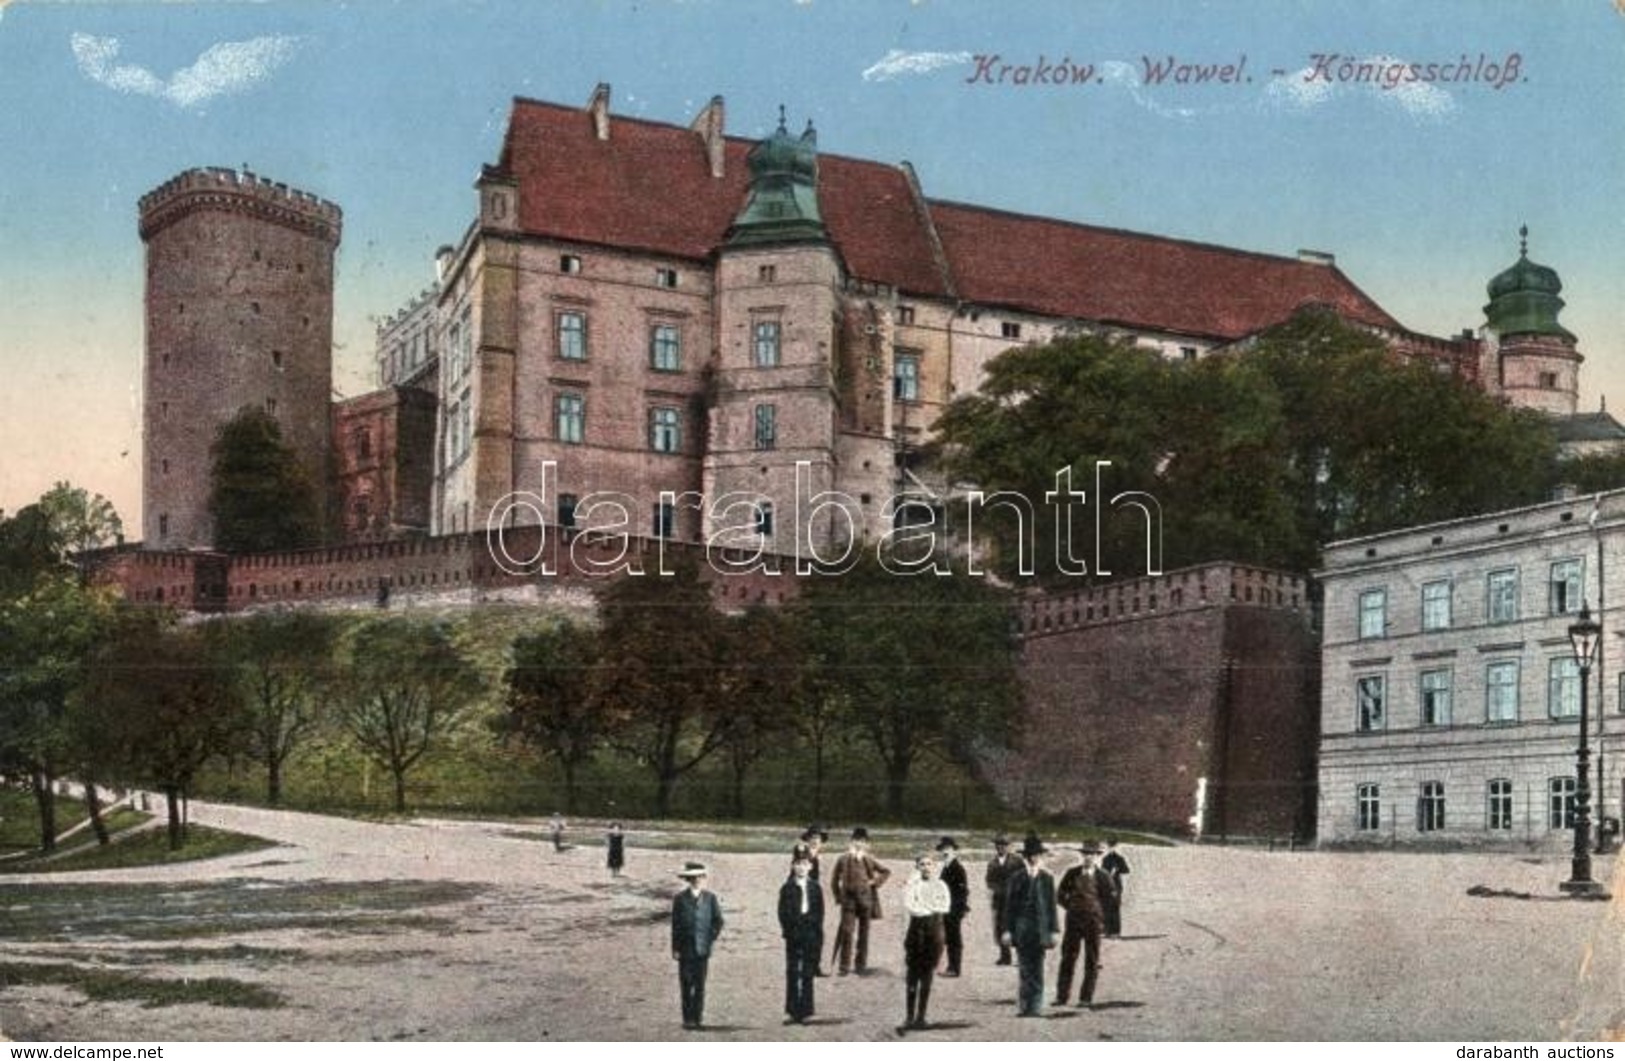 T2/T3 Kraków, Krakau; Wawel / Köngisschloss / Royal Castle + K.u.K. Militärzensur Krakau (EK) - Unclassified